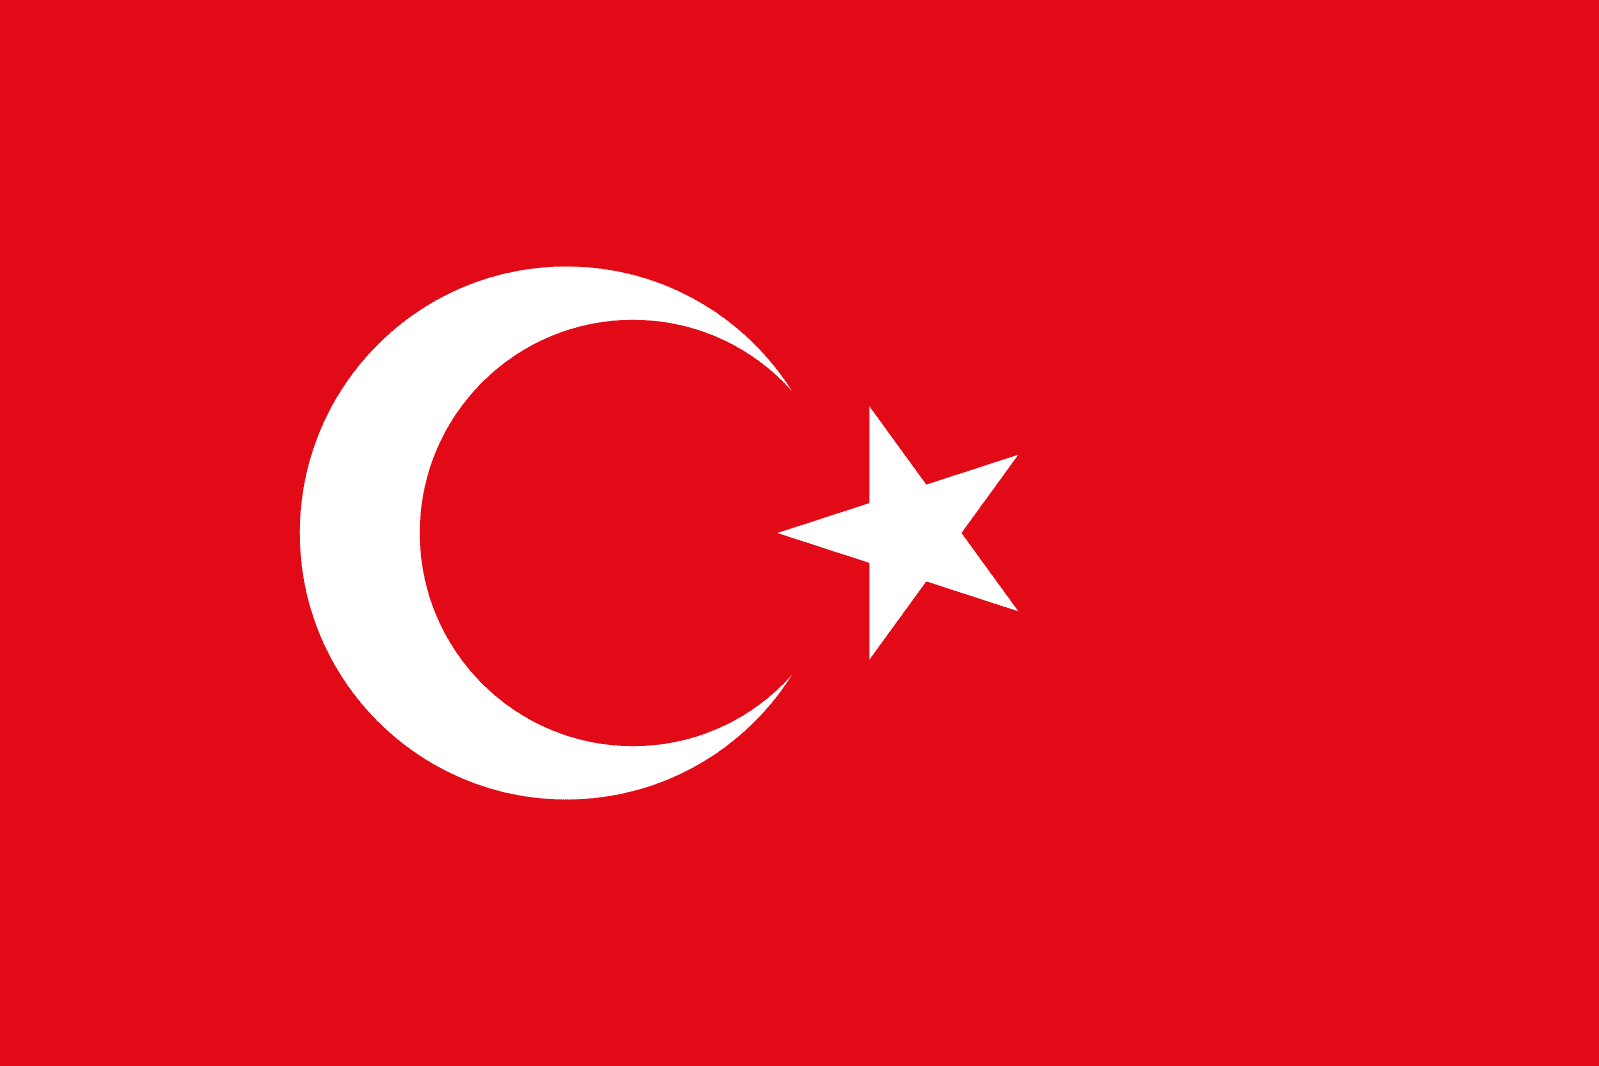 1599px-Flag_of_Turkey.svg